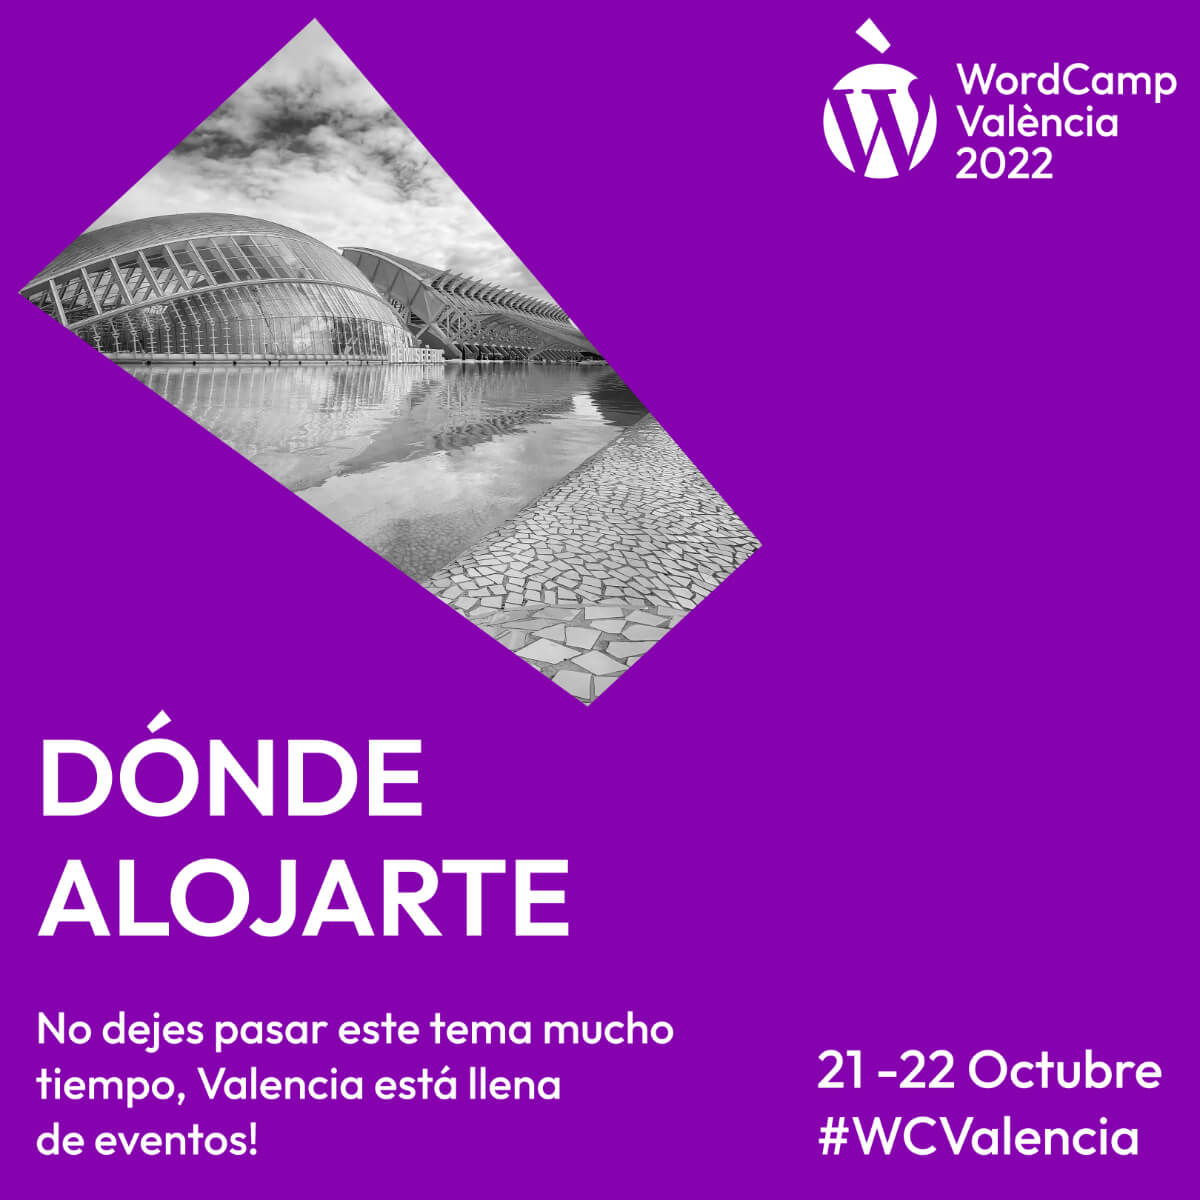 Dónde alojarse durante la WordCamp Valencia 2022